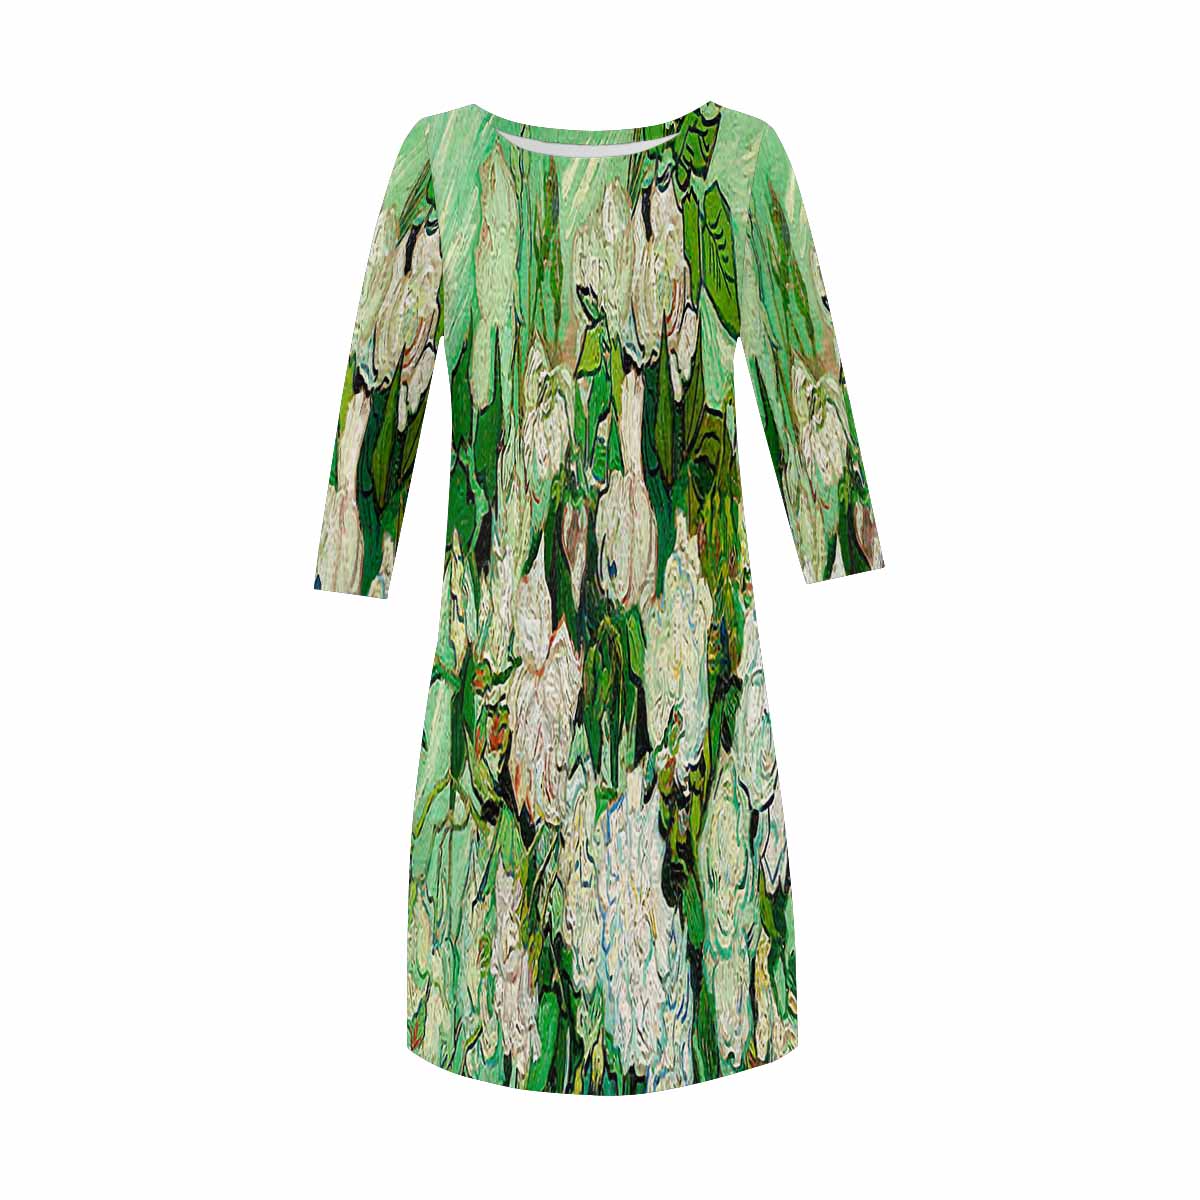 Vintage floral loose dress, model D29532 Design 45